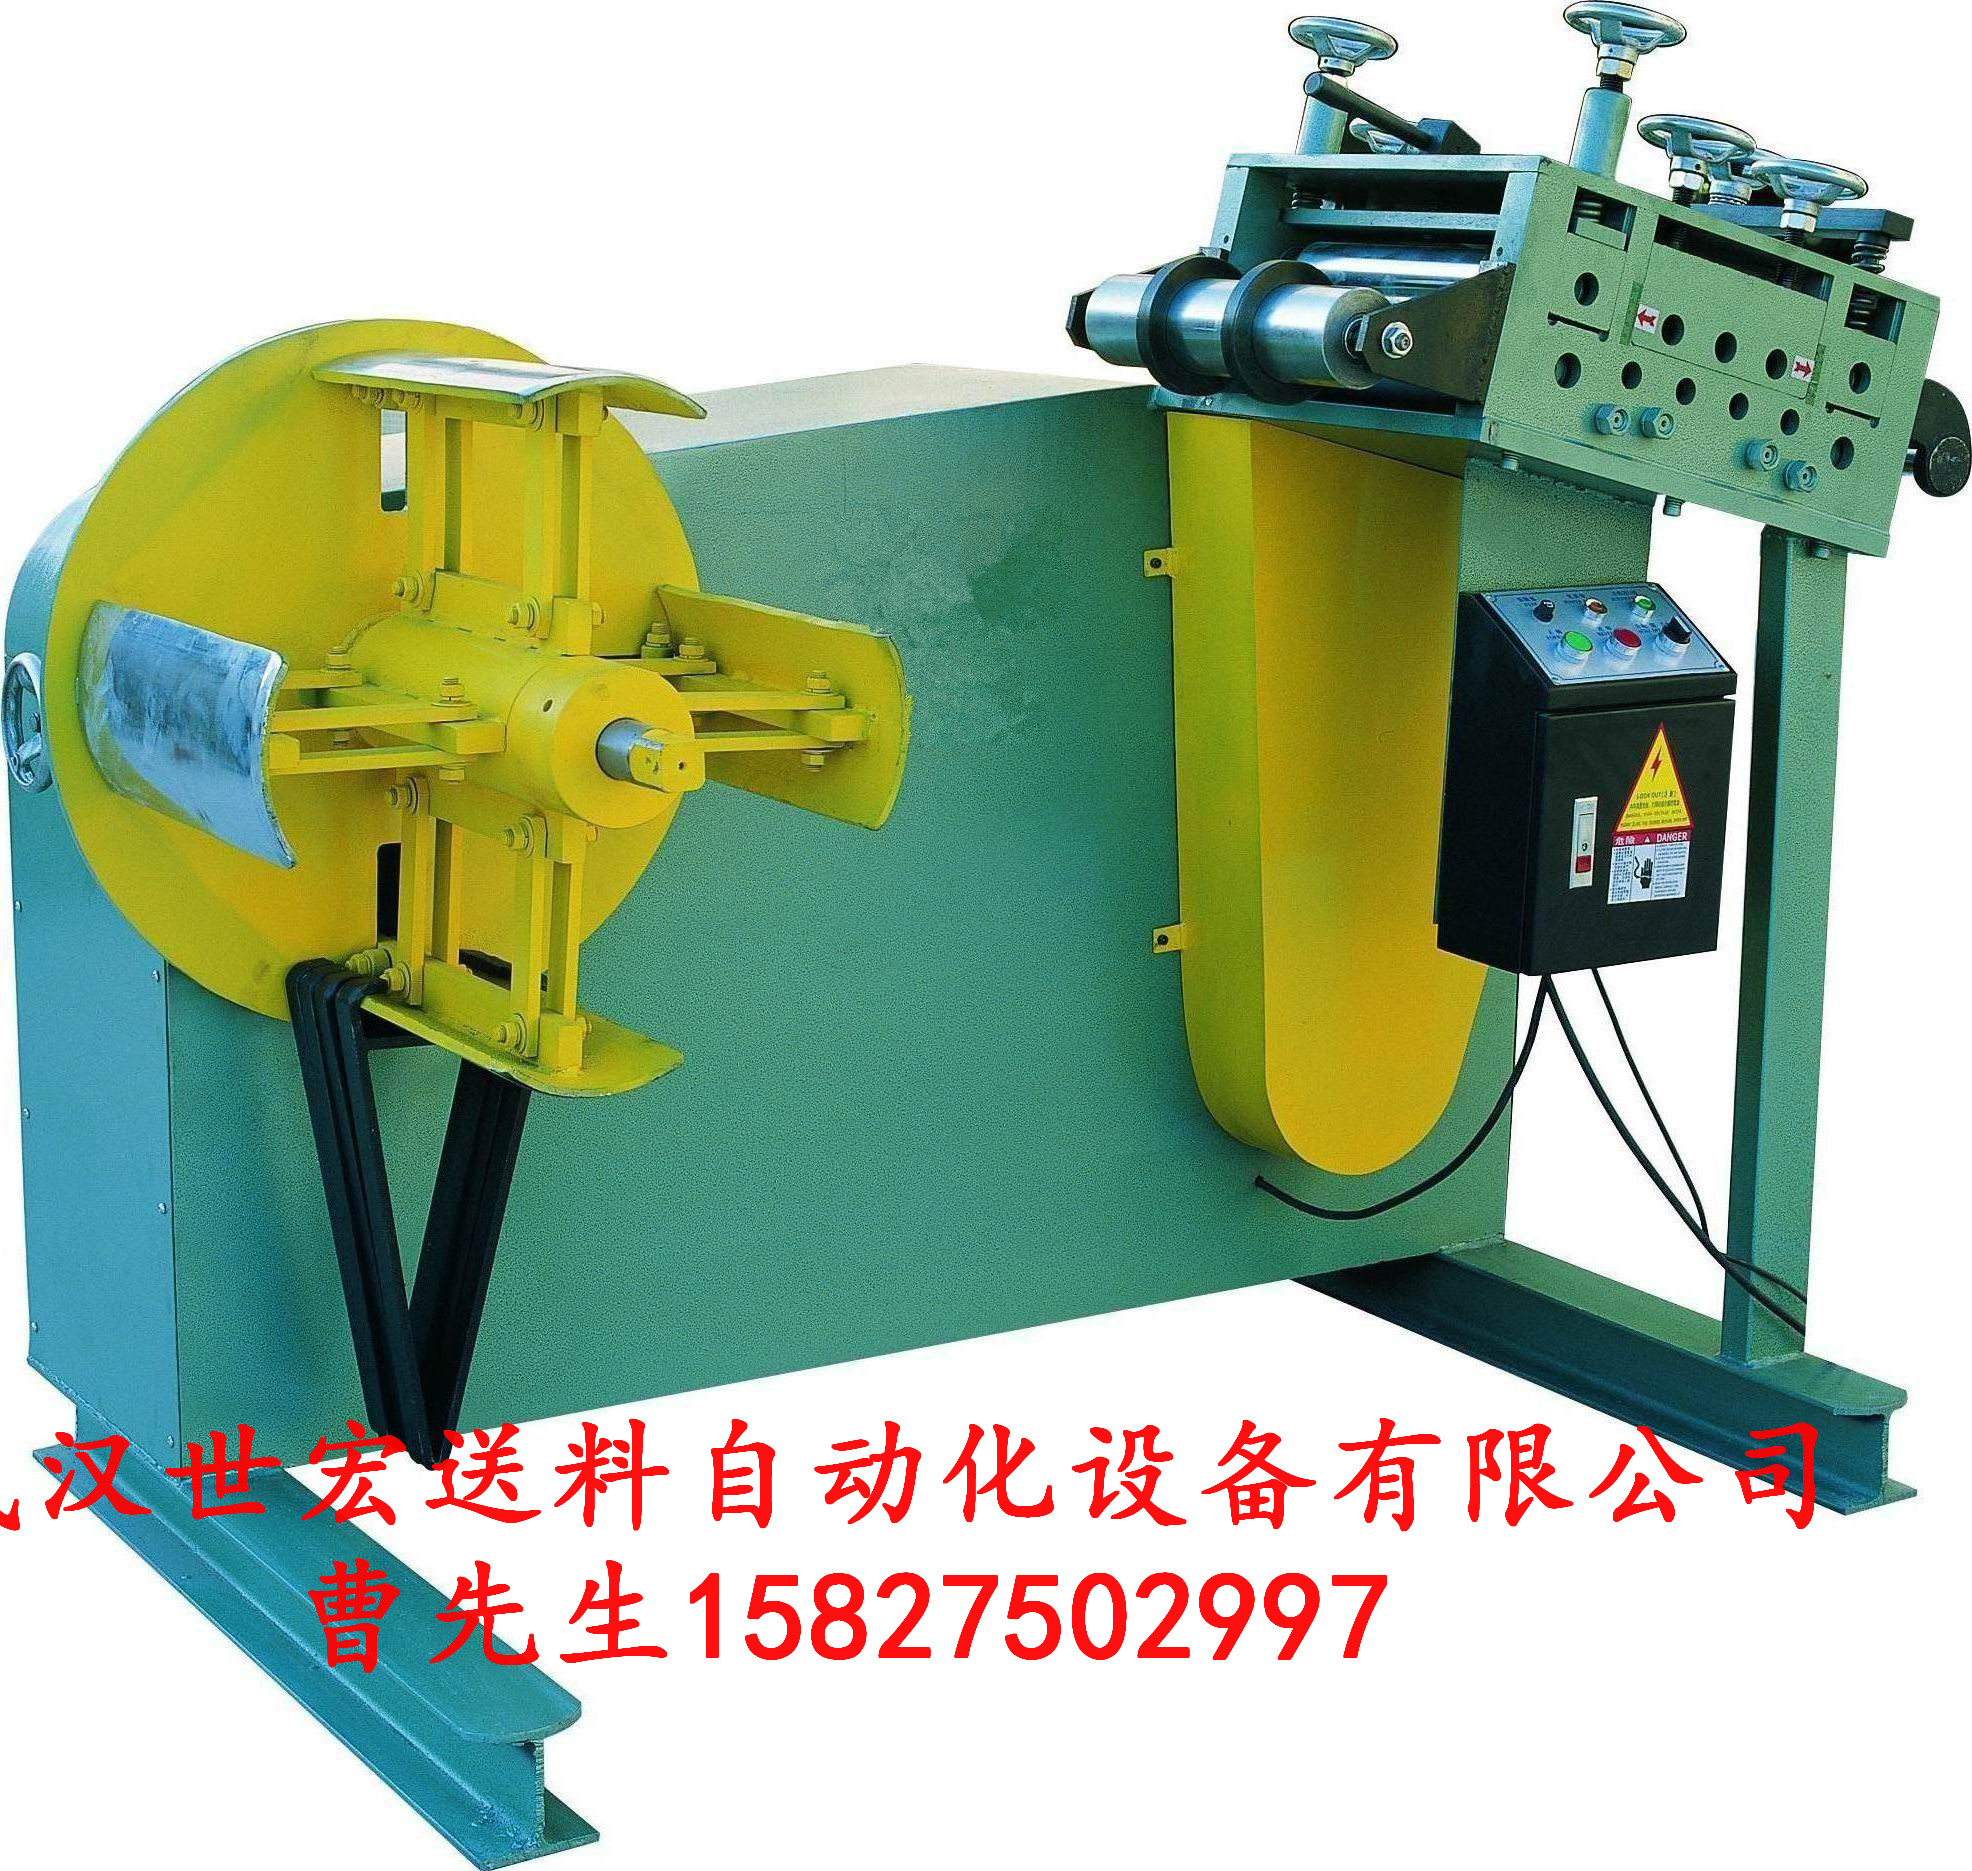 湖北武汉厂家直销湖南安徽江西二合一材料架校平一体机（液压扩张，带变频器）图片